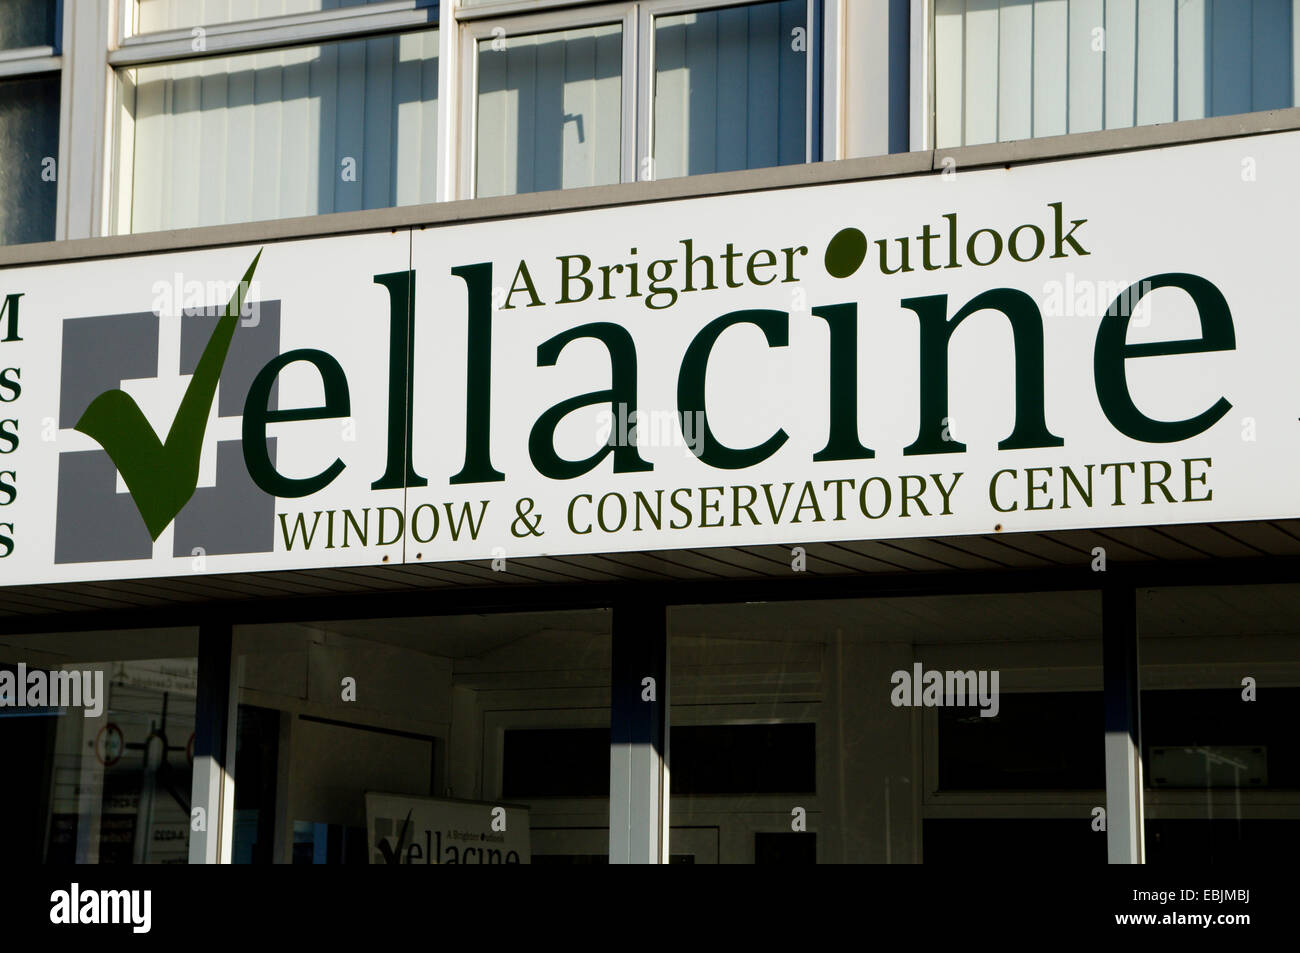 Fenêtre d'Vellacine et Conservatoire Centre, Cardiff, Pays de Galles. Banque D'Images